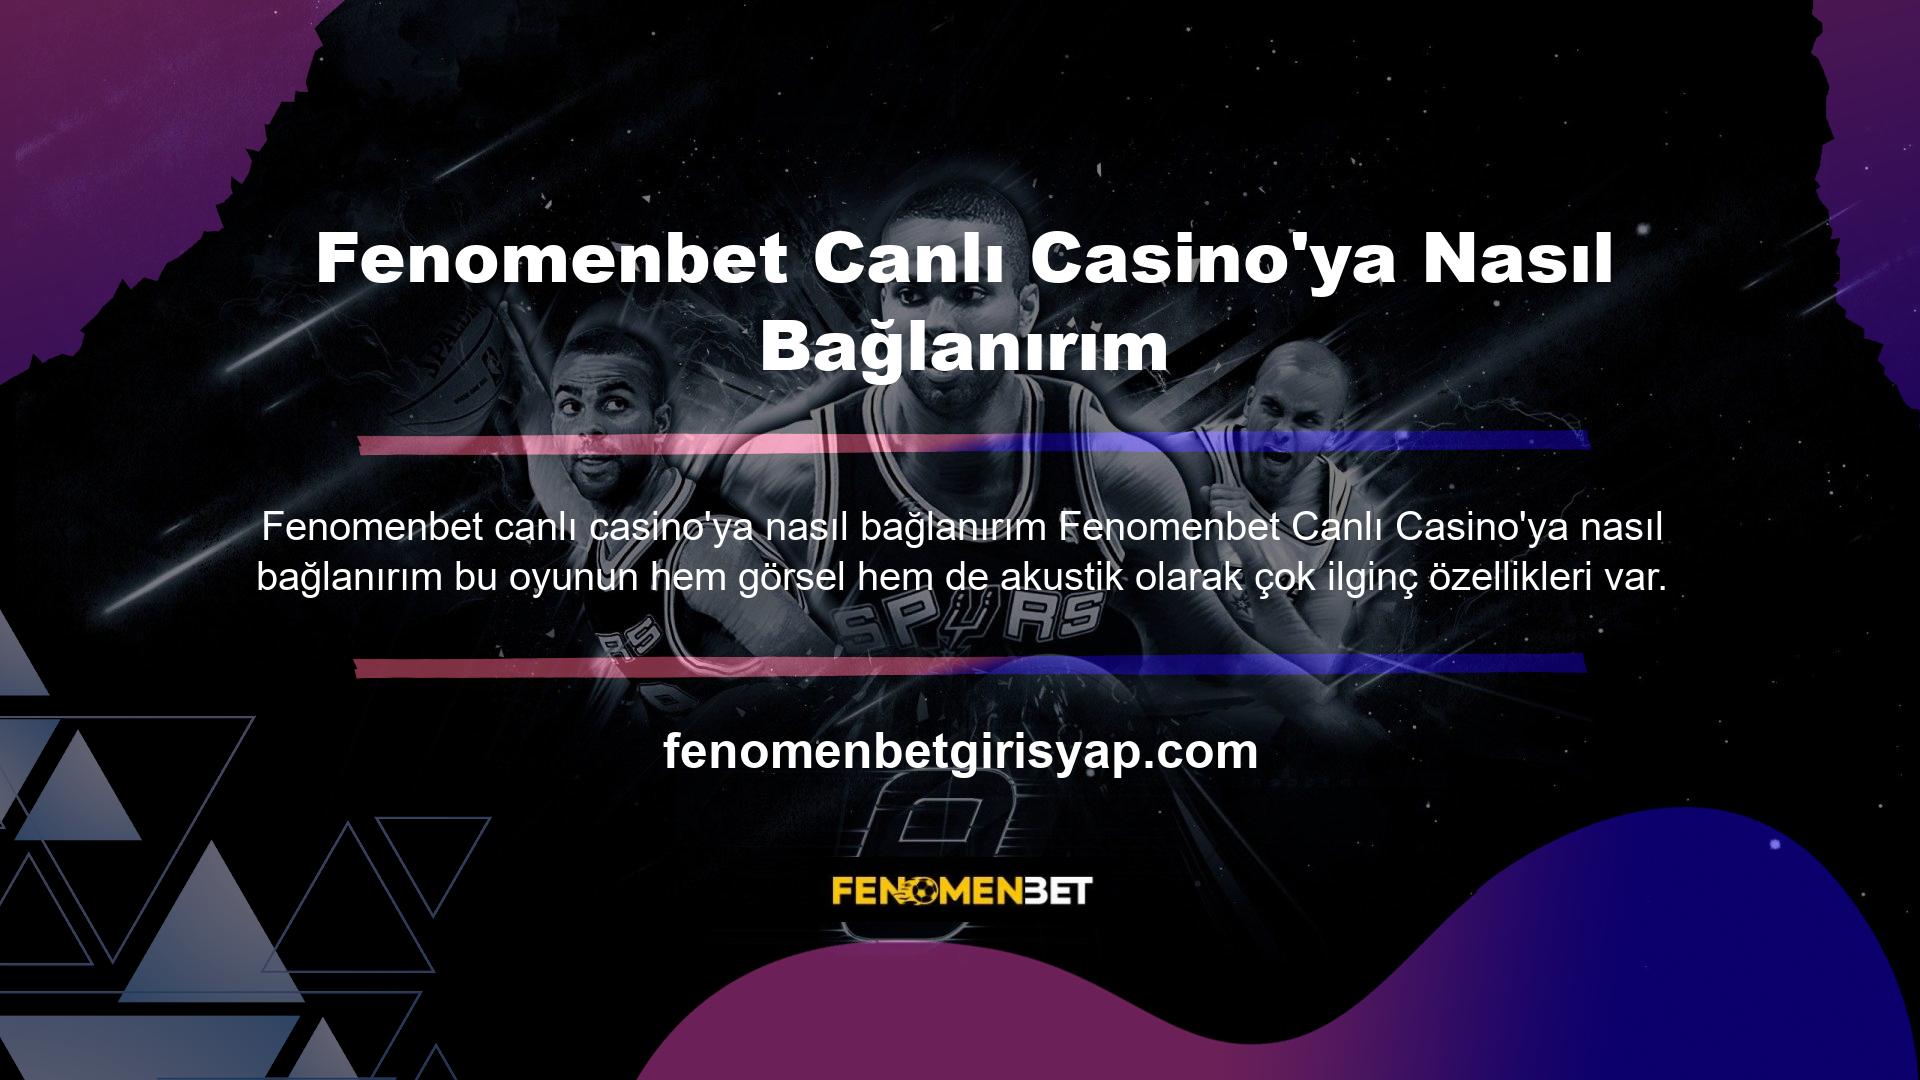 Fenomenbet sitesinde yer alan oyunların tamamı casino tutkunlarının isteklerini tatmin edecek düzeydedir